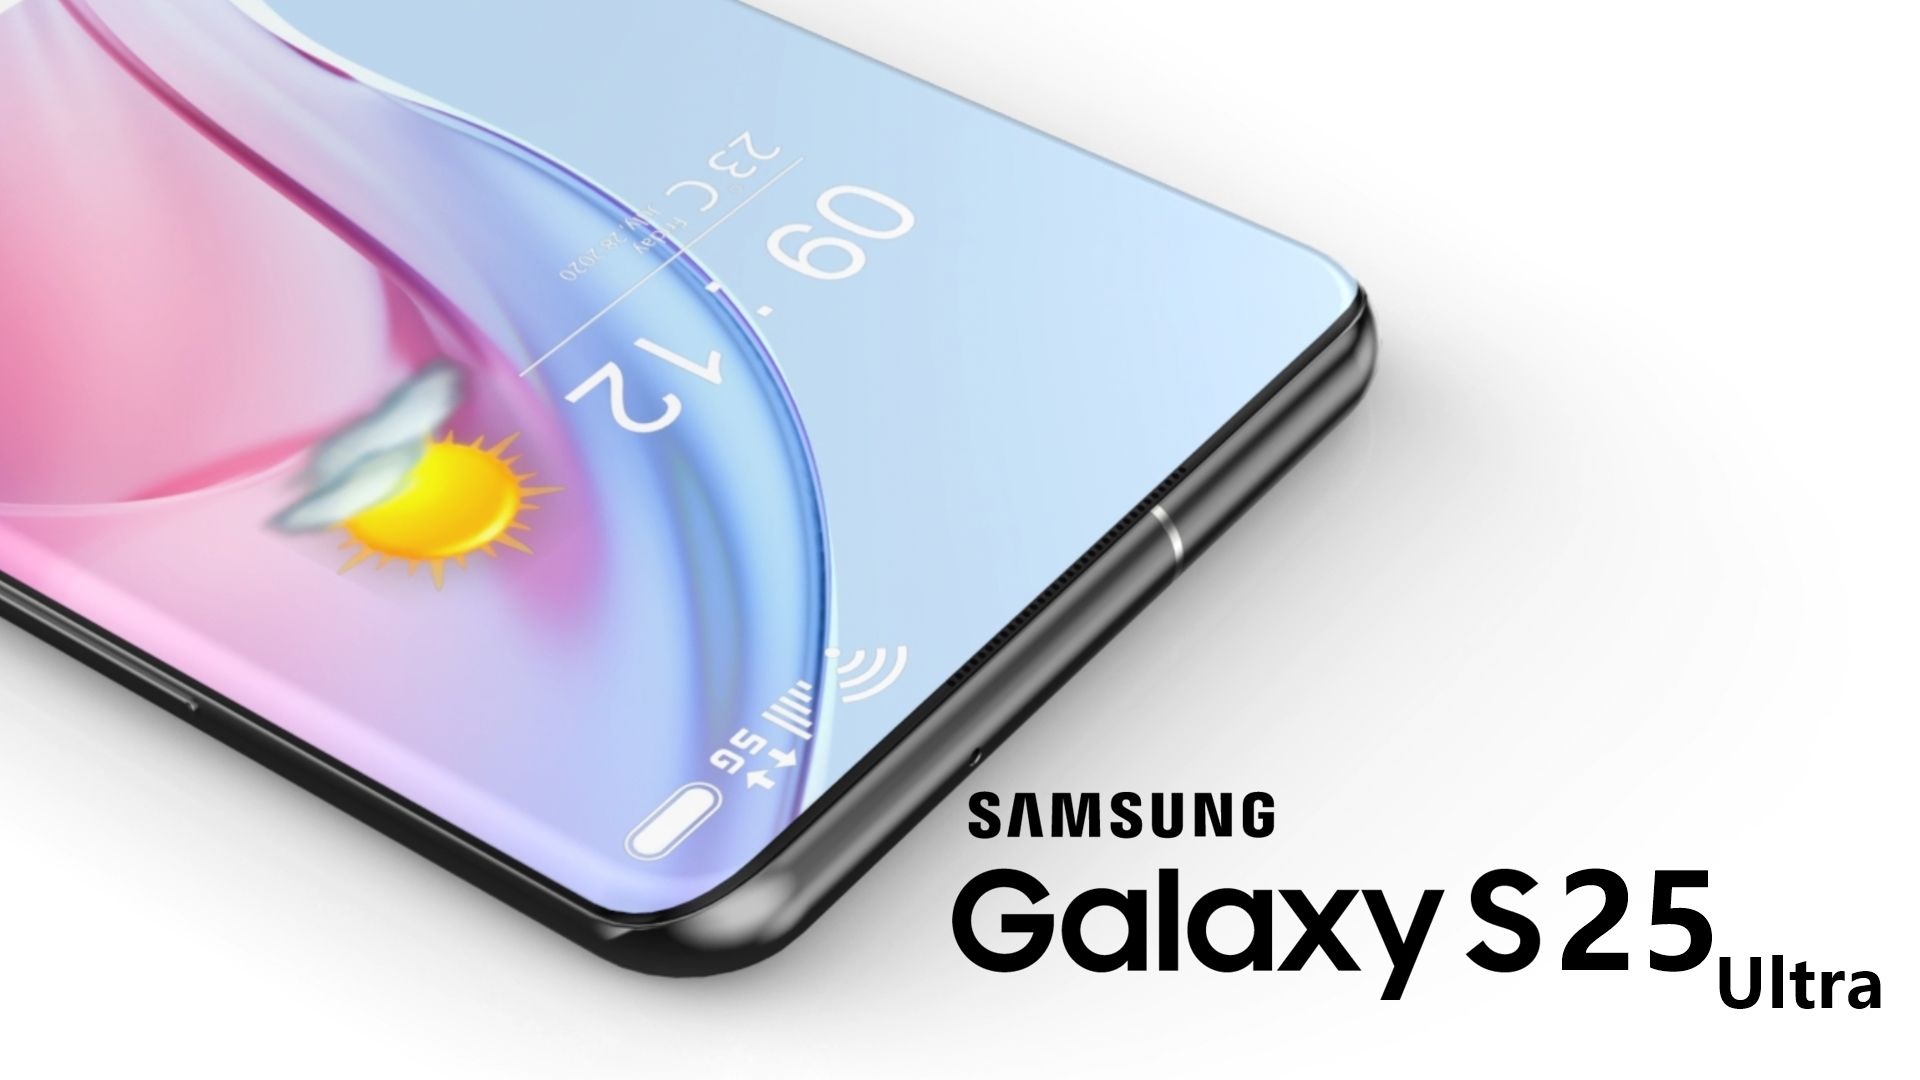 Samsung GALAXY S25 Schimbarile NEOBISNUITE Dezvaluite Noile Telefoane